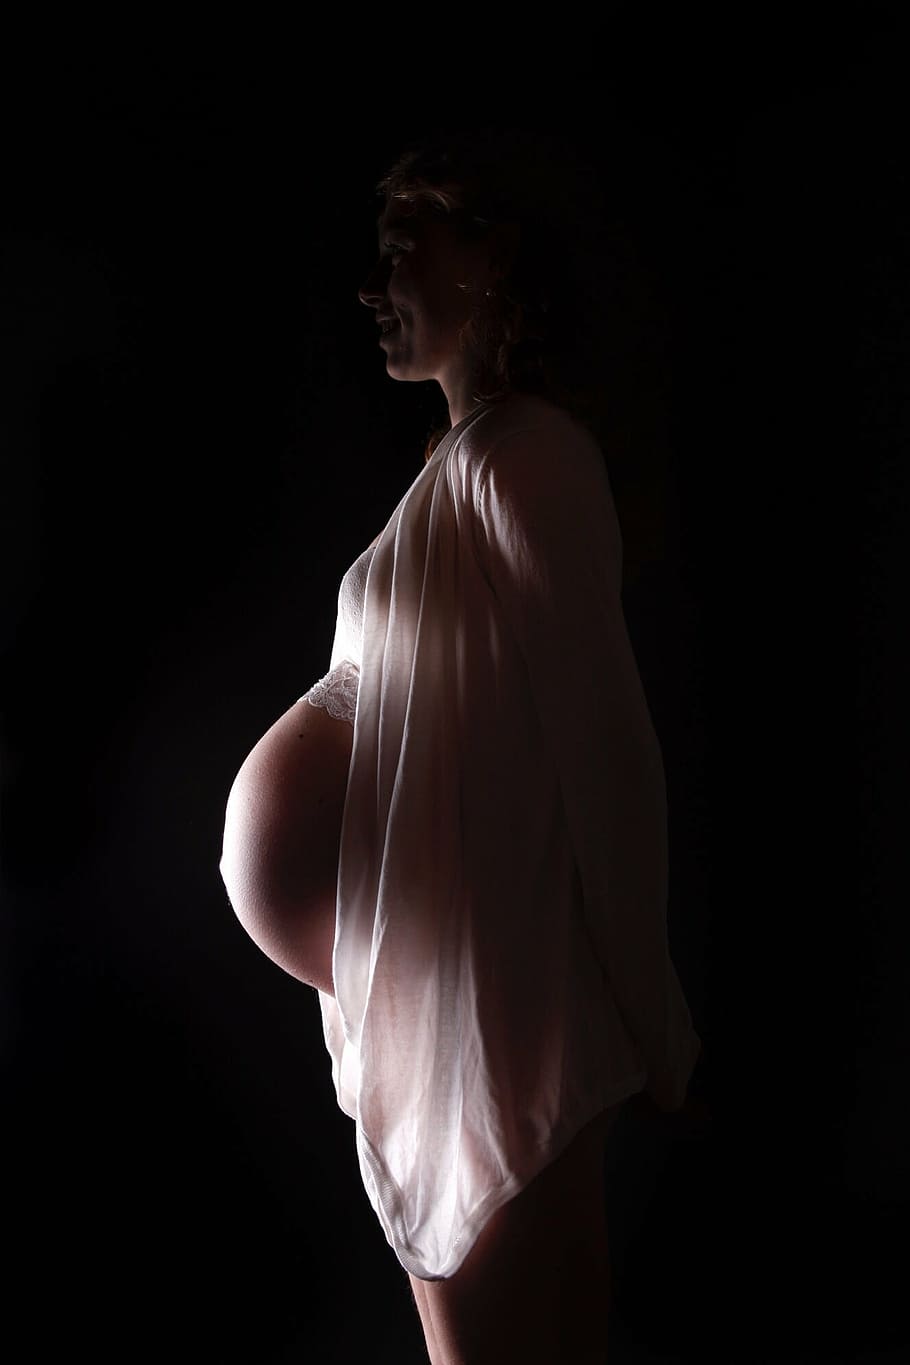 妊娠中の女性の写真, 妊娠中, 腹, 赤ちゃん, 母親, 愛, ママ, 黒背景, 女性, 大人